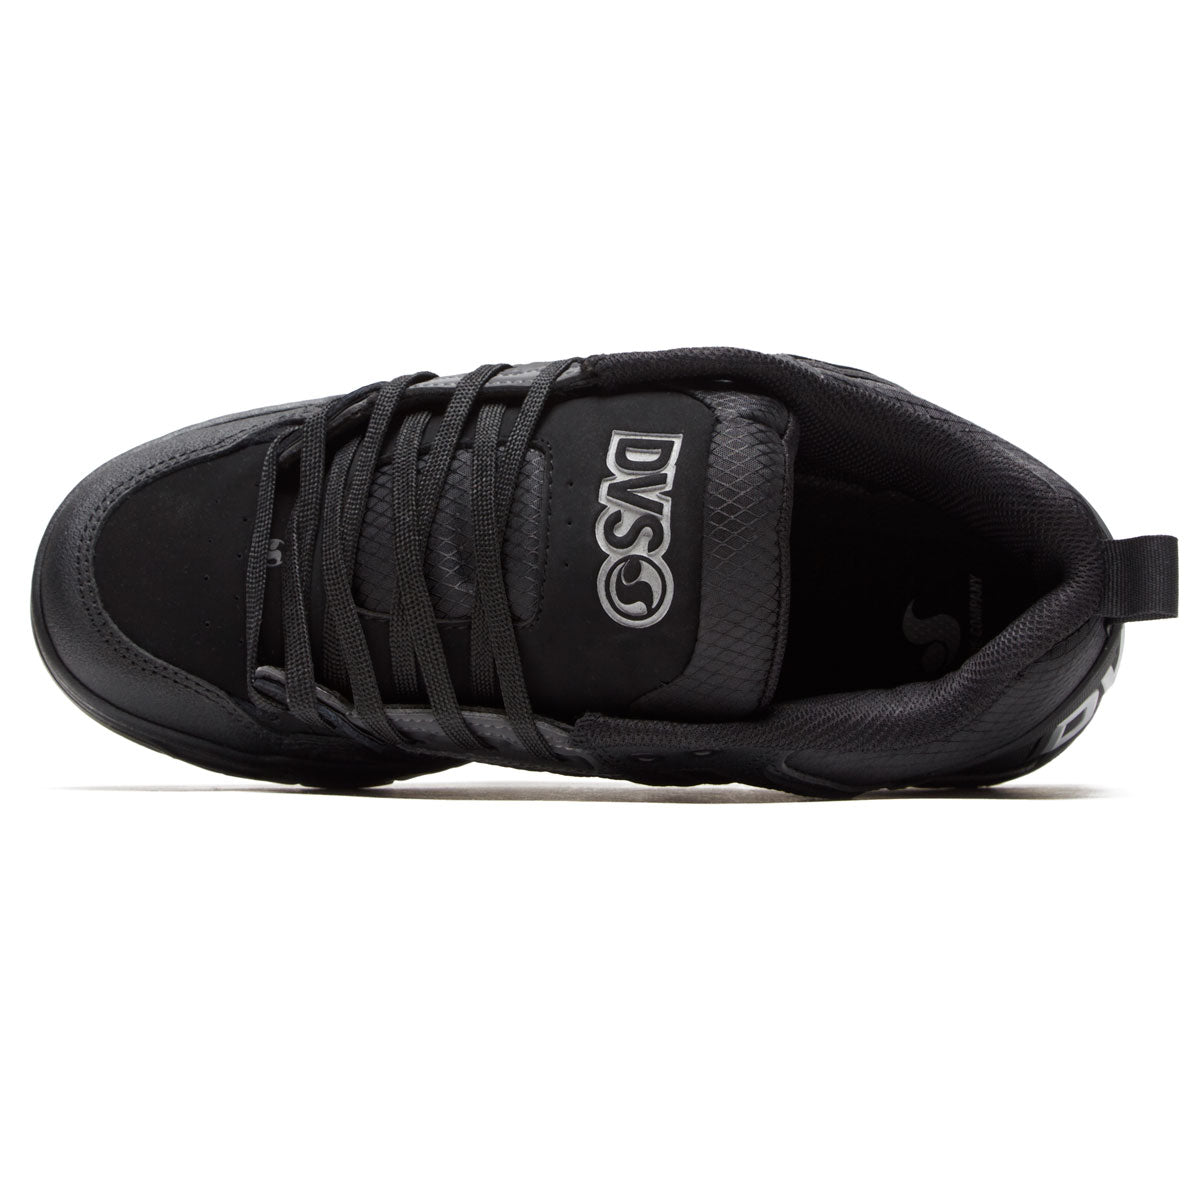 DVS Comanche Shoes - Black Reflective/Gum/Nubuck image 3